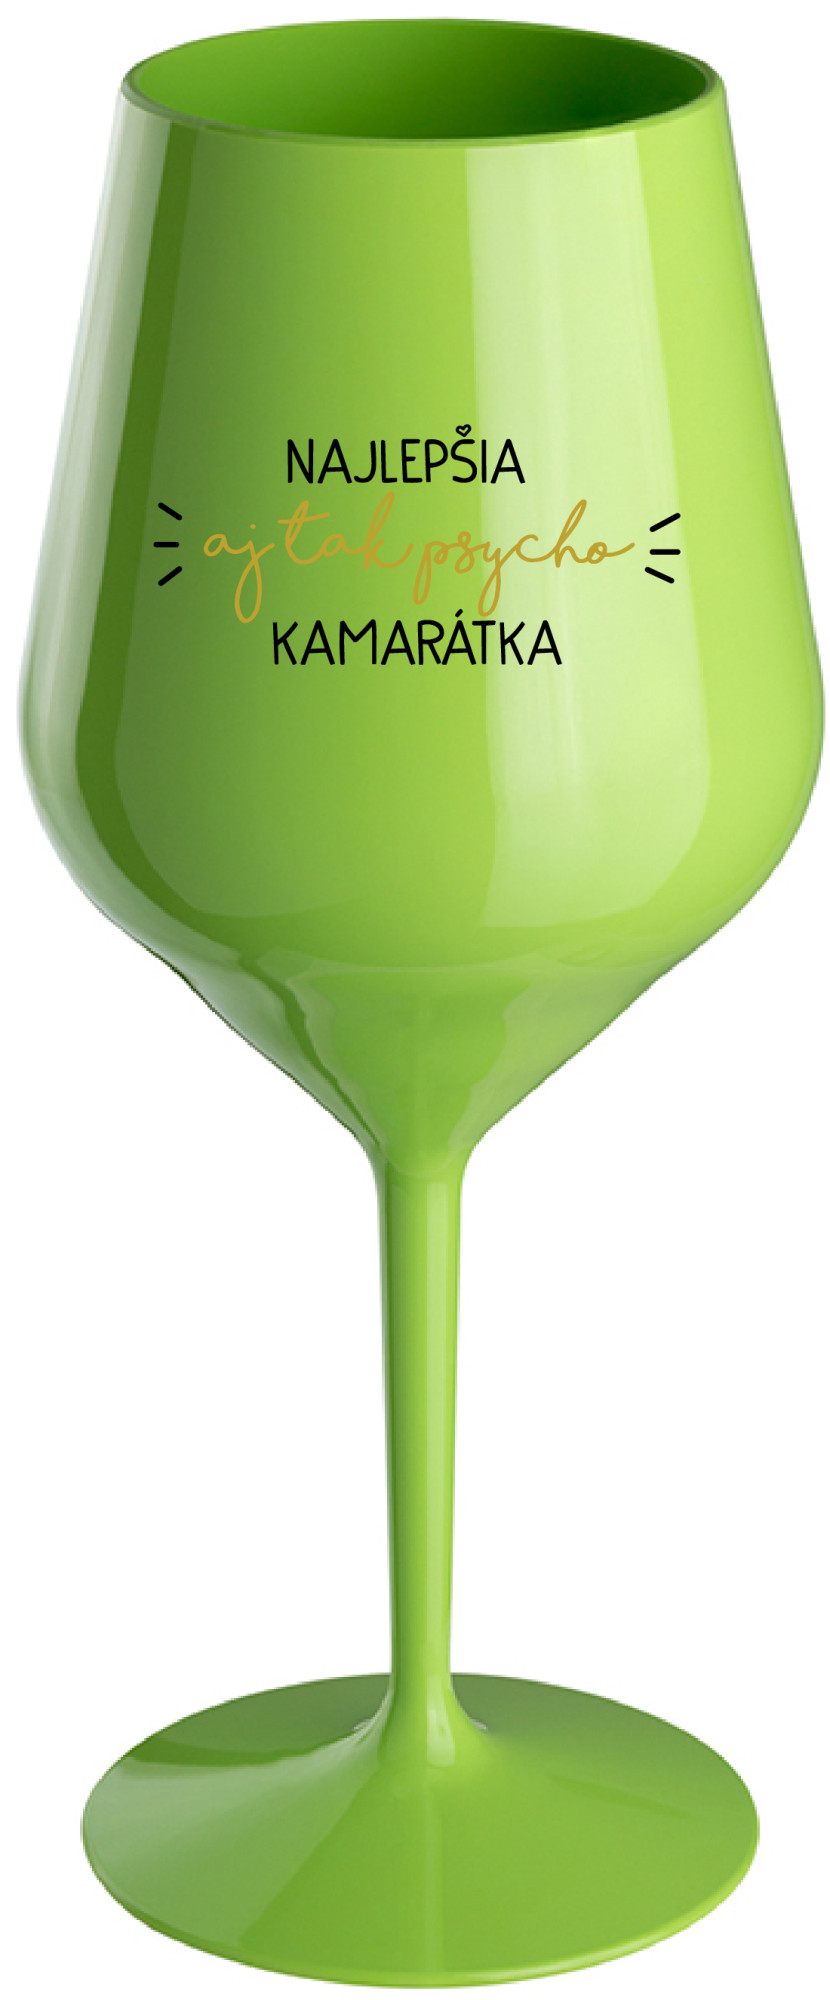 NAJLEPŠIA AJ TAK PSYCHO KAMARÁTKA - zelená nerozbitná sklenice na víno 470 ml